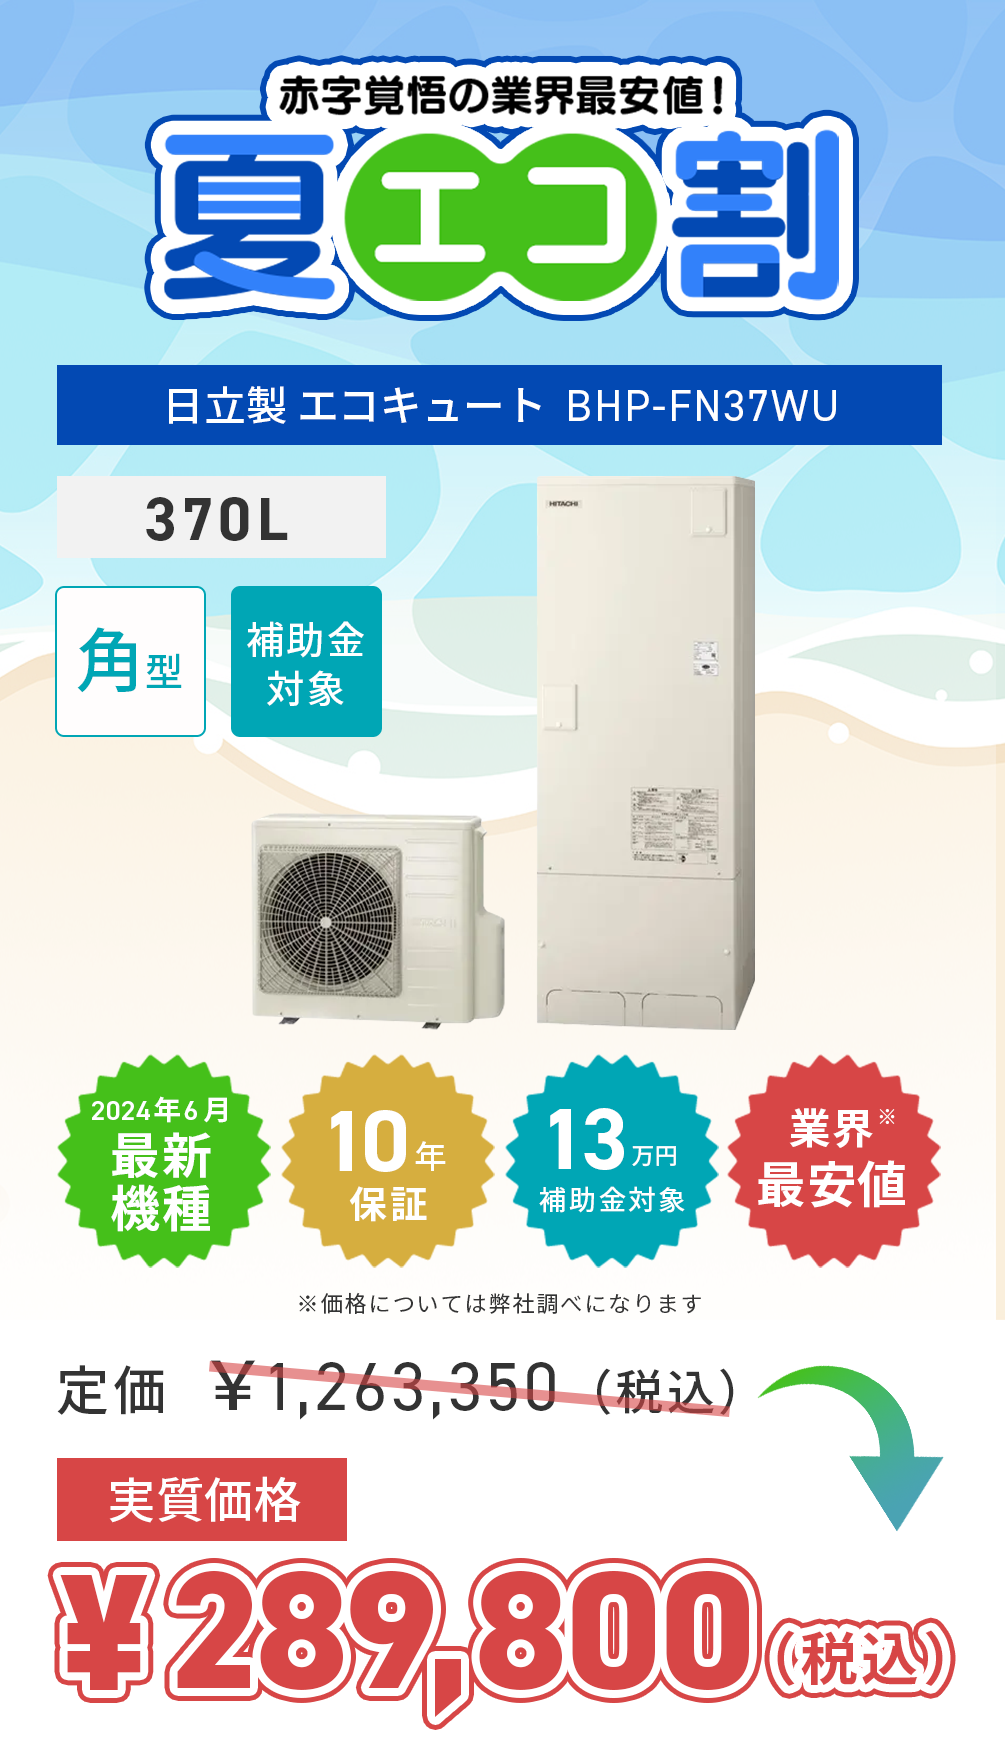 hitachi_BHP-FN37WU-202407-campaign